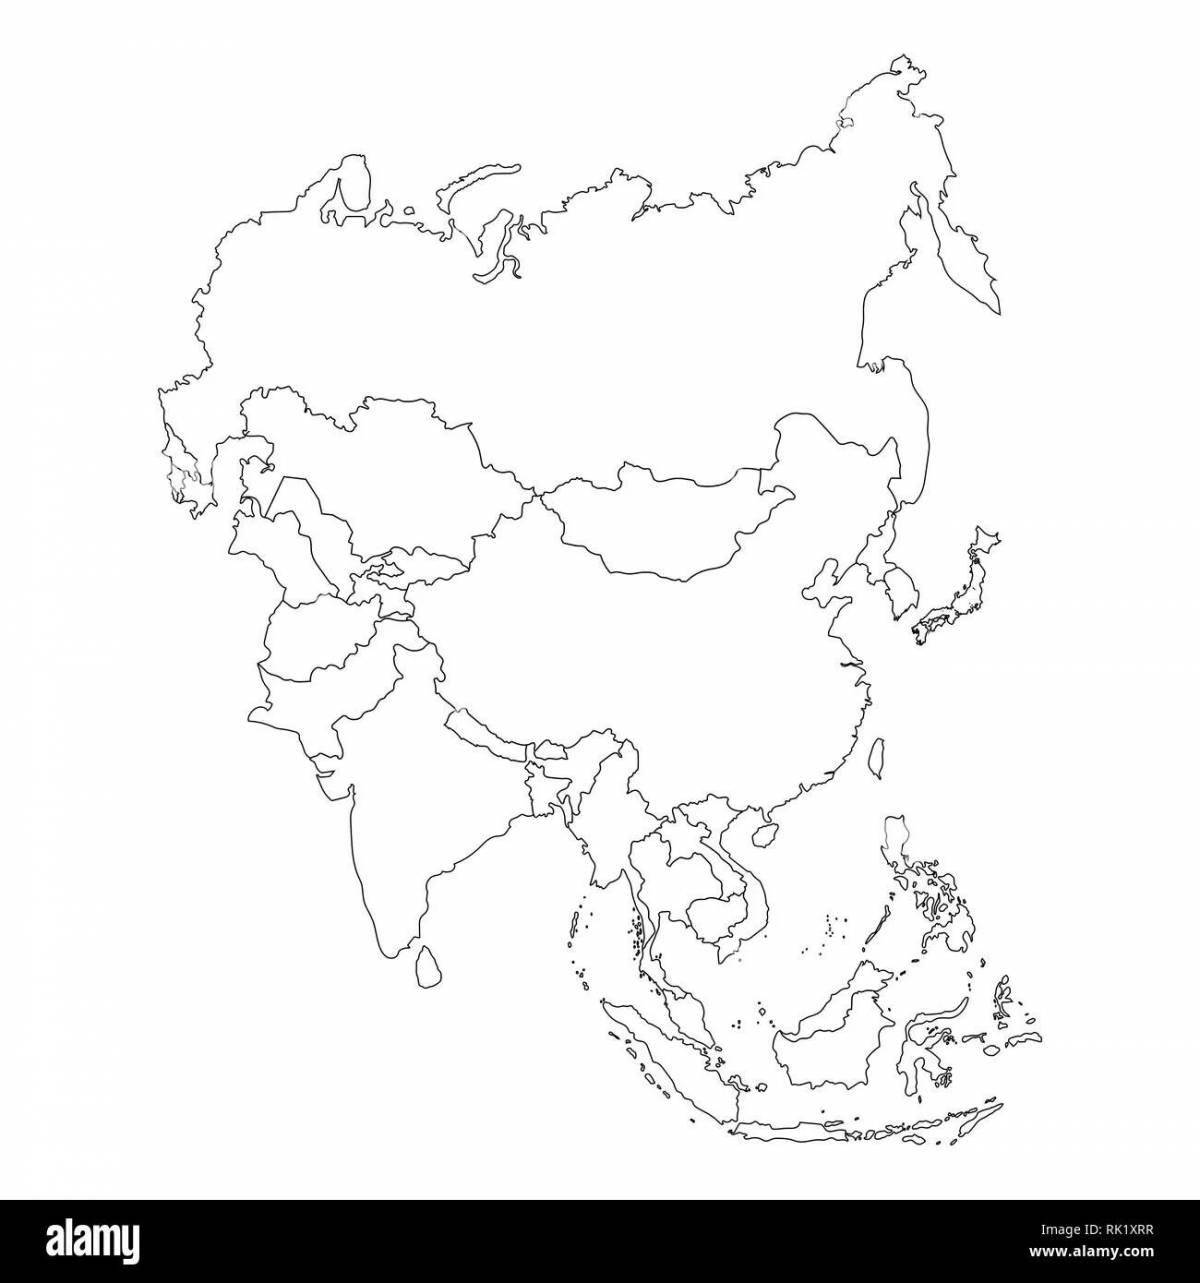 Раскраска манящая карта азии